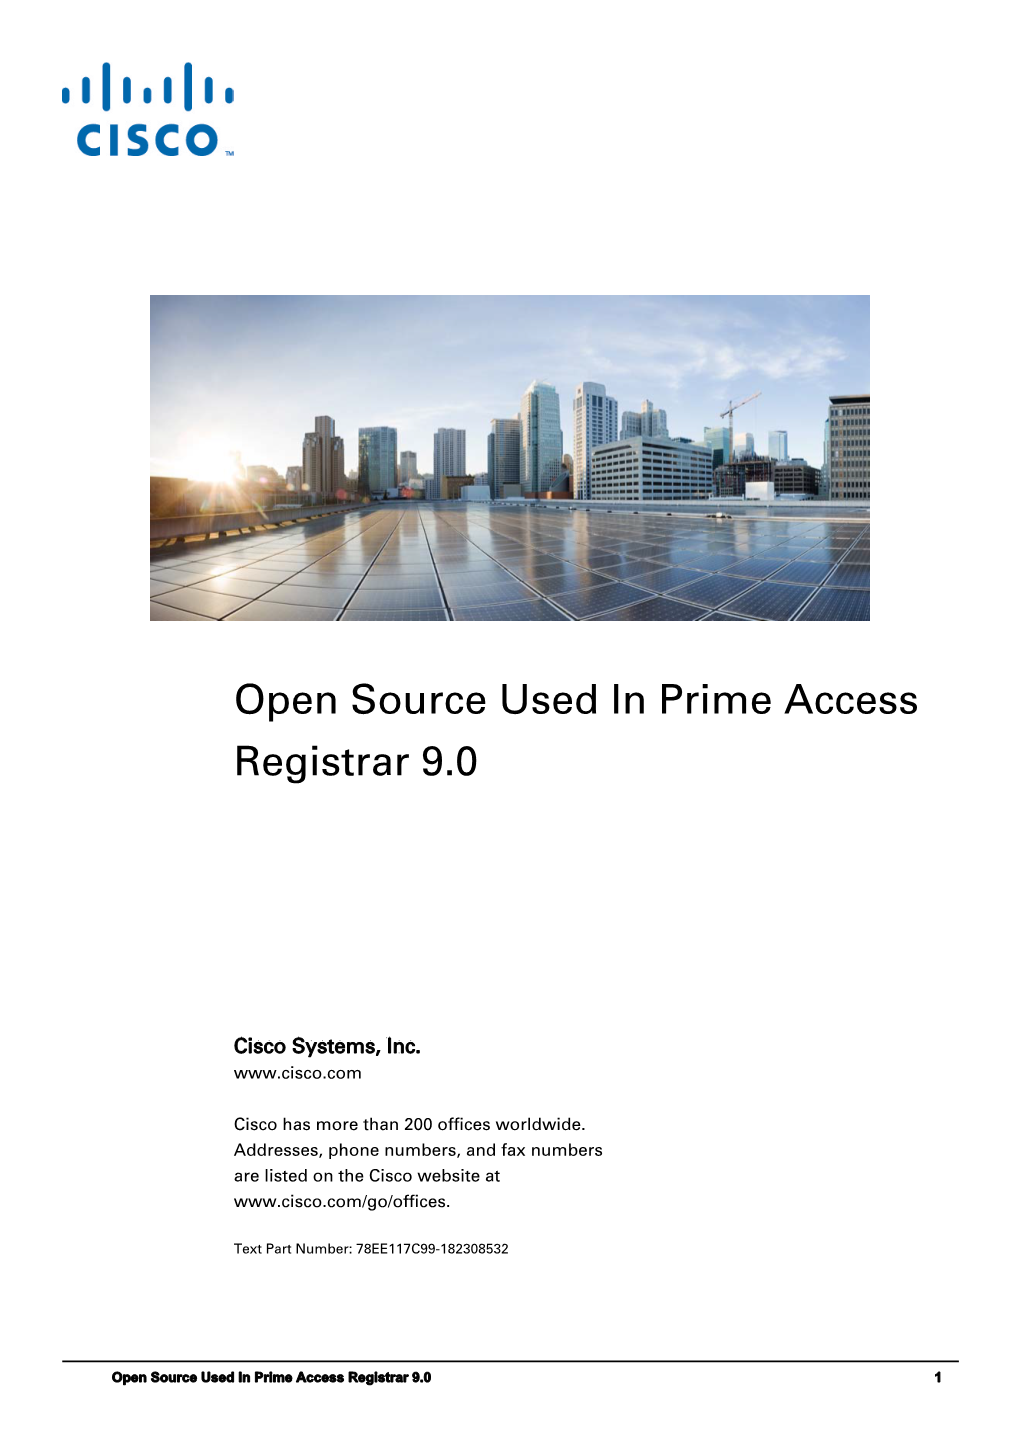 Open Source Used in Cisco Prime Access Registrar